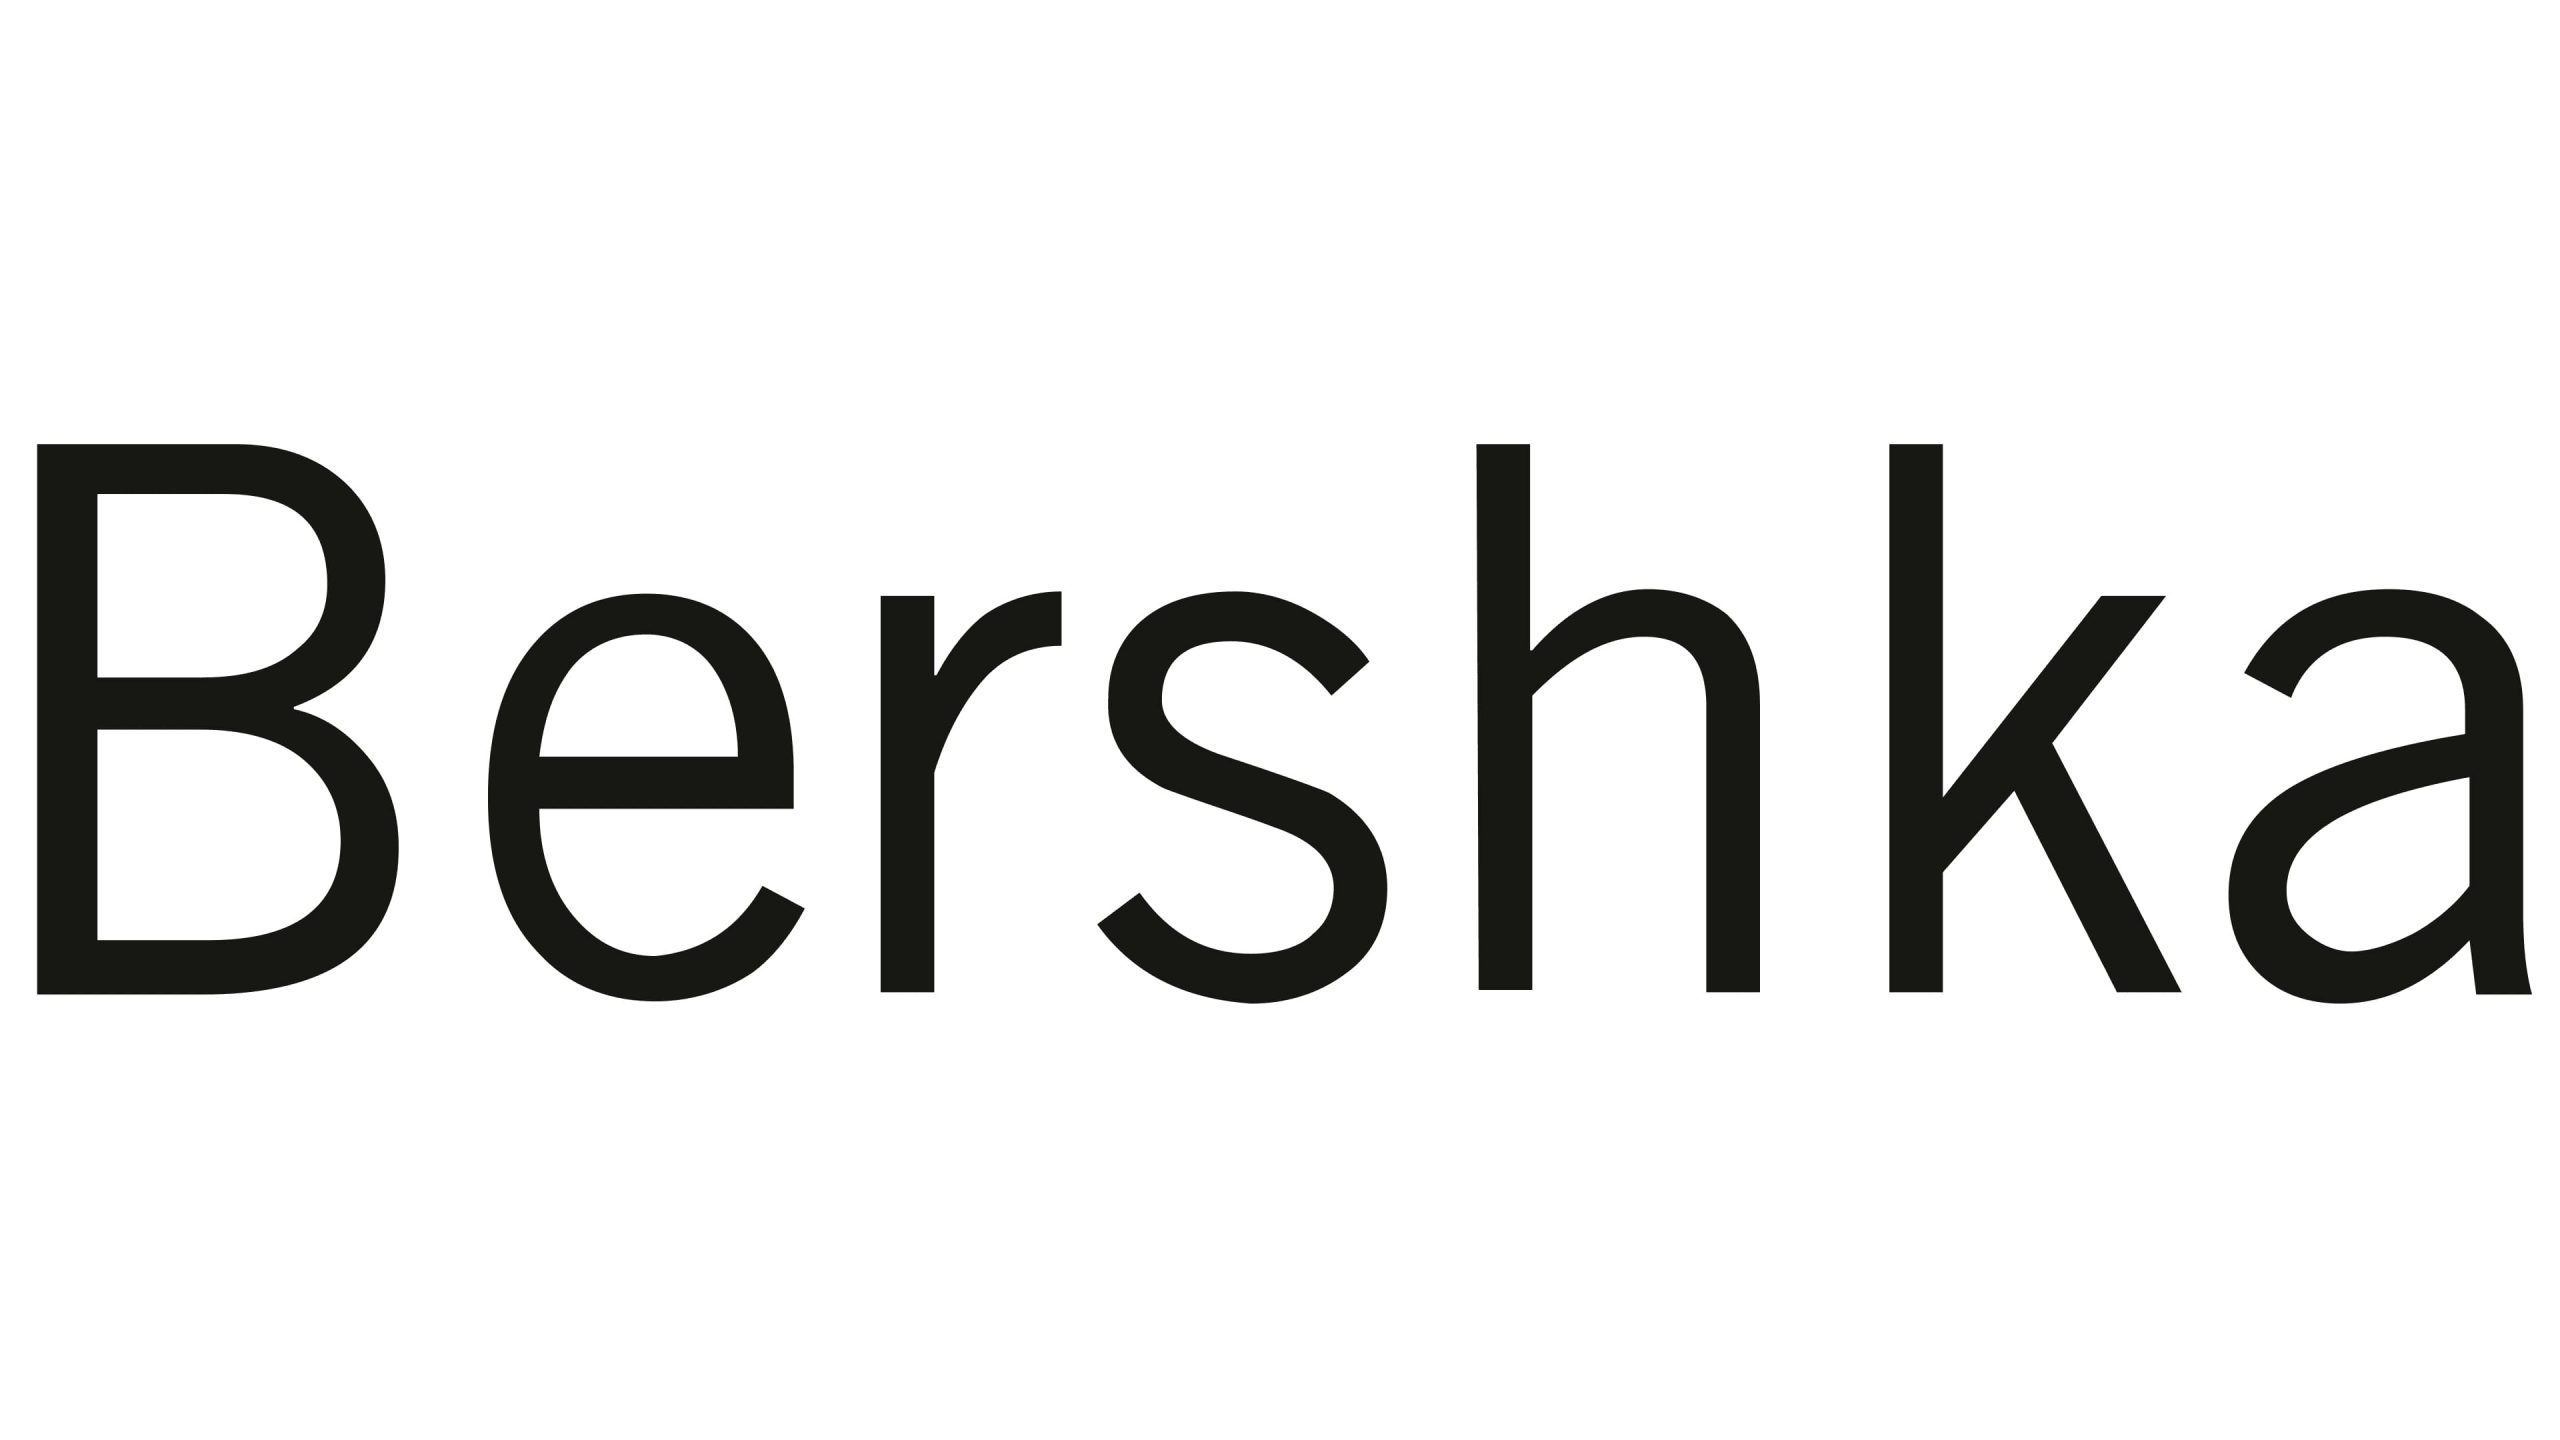 Bershka logo scaled